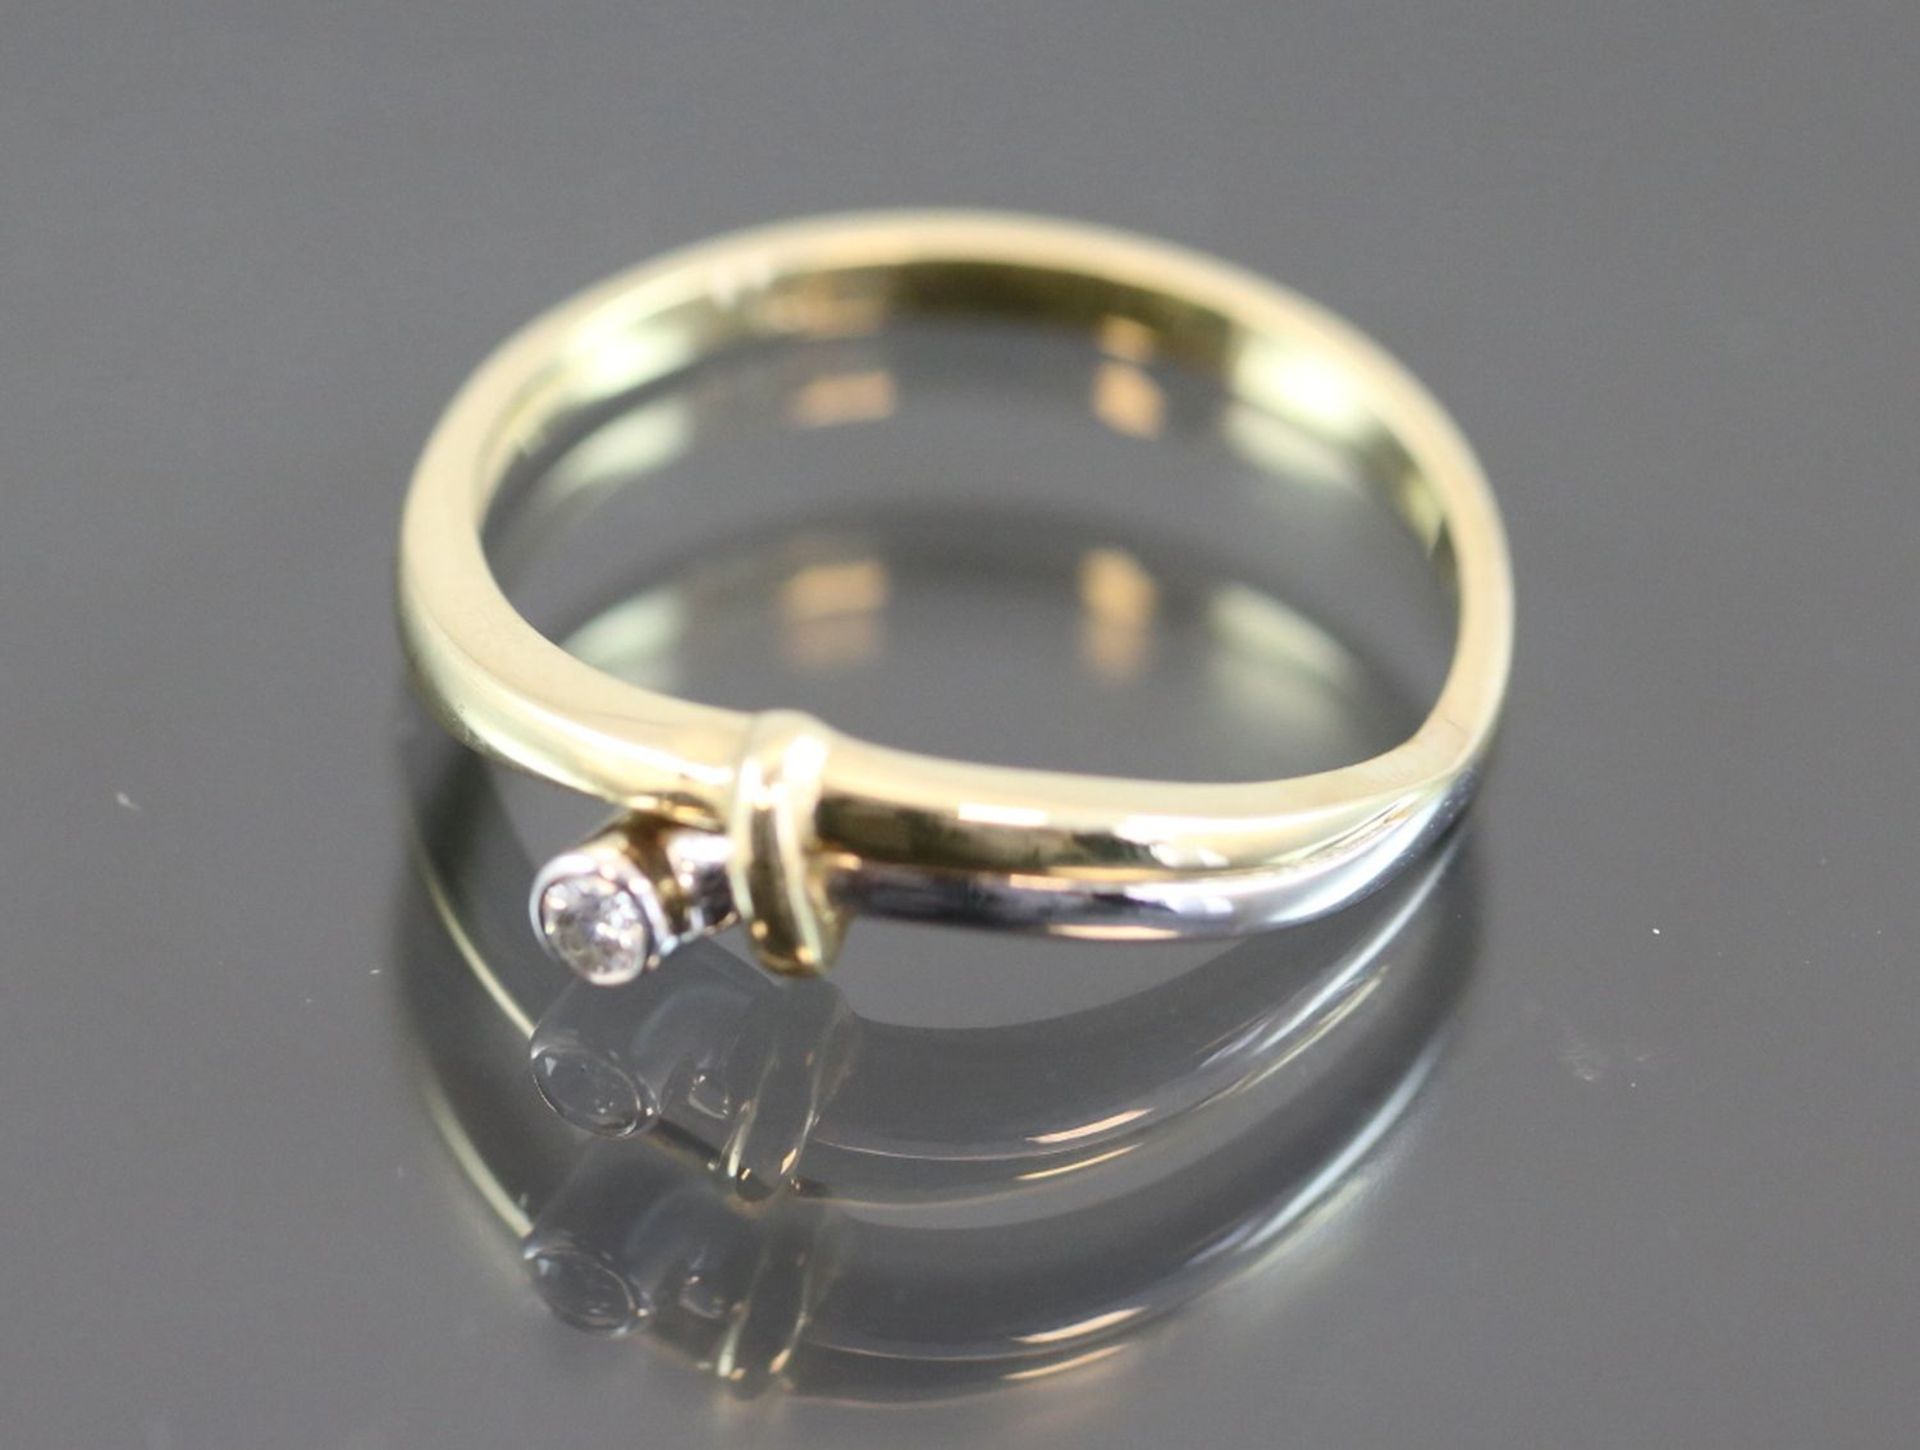 Brillant-Ring, 585 Gelbgold2,4 Gramm 1 Brillant, 0,04 ct., w/si. Ringgröße: 56Zustand: Neu- - Bild 2 aus 3